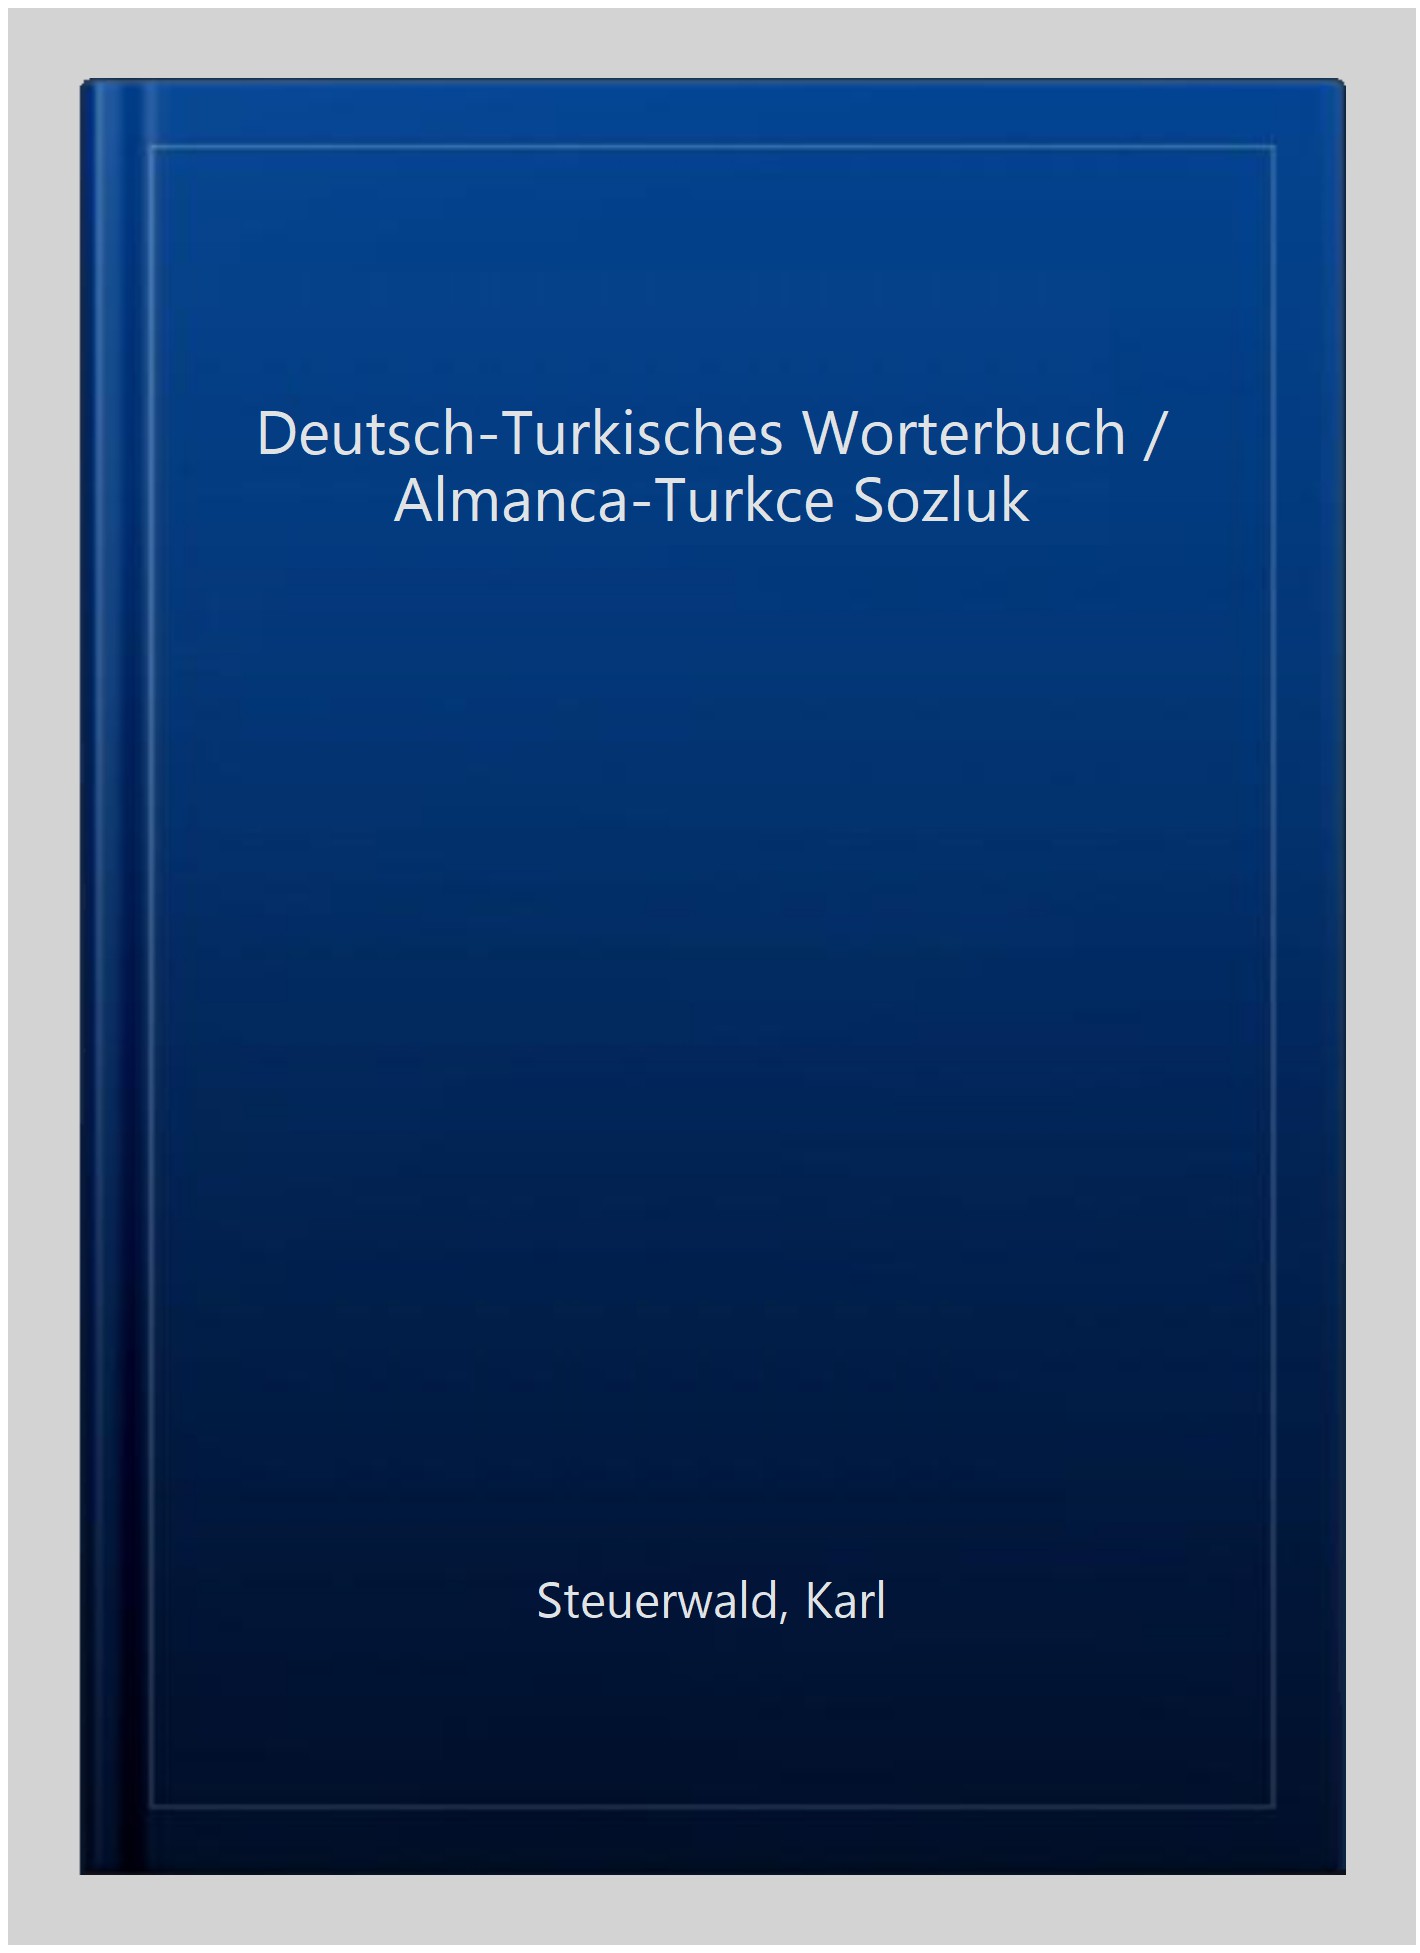 Deutsch-Turkisches Worterbuch / Almanca-Turkce Sozluk -Language: german - Steuerwald, Karl